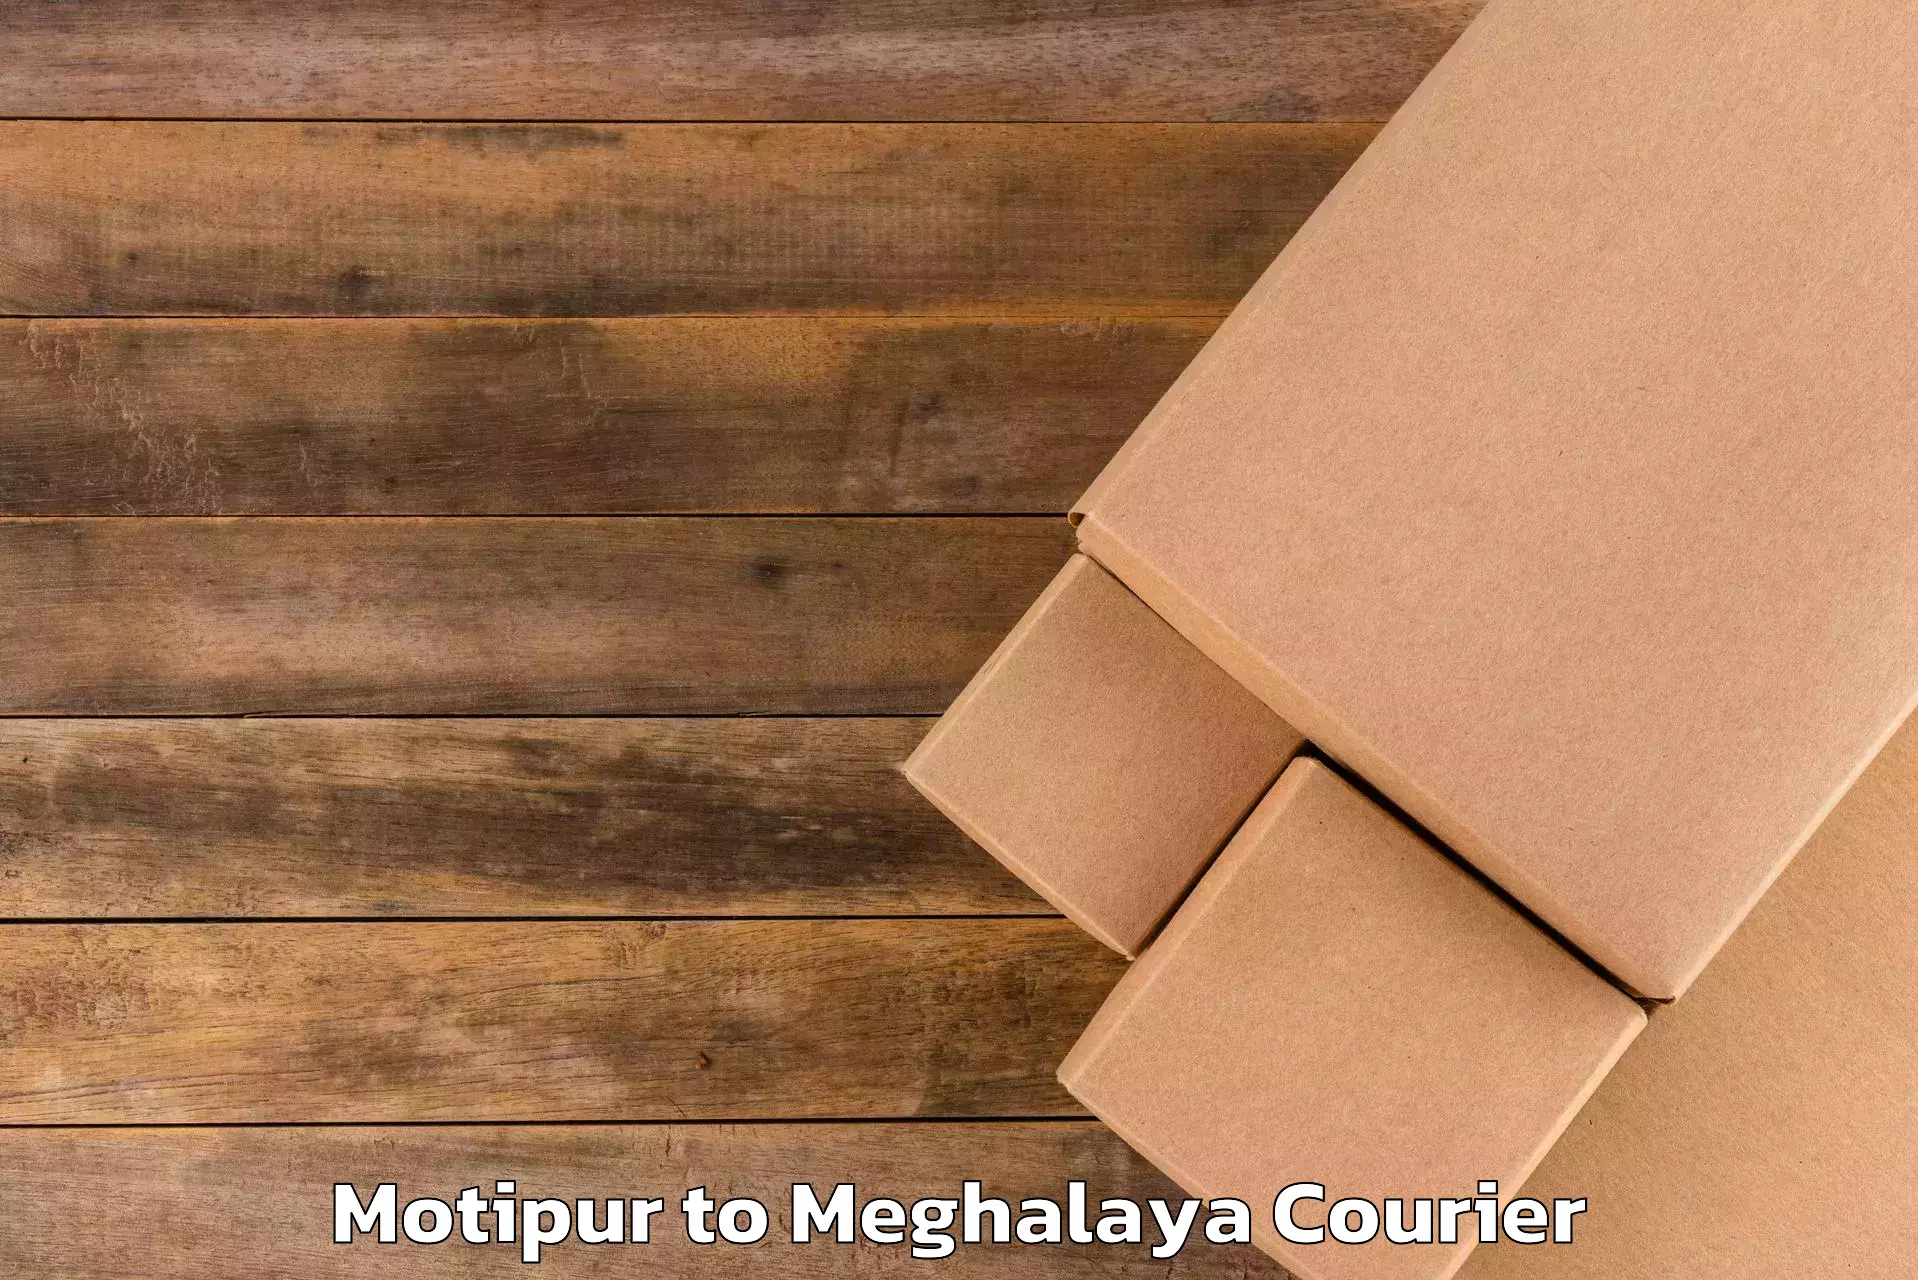 Corporate baggage transport Motipur to Meghalaya